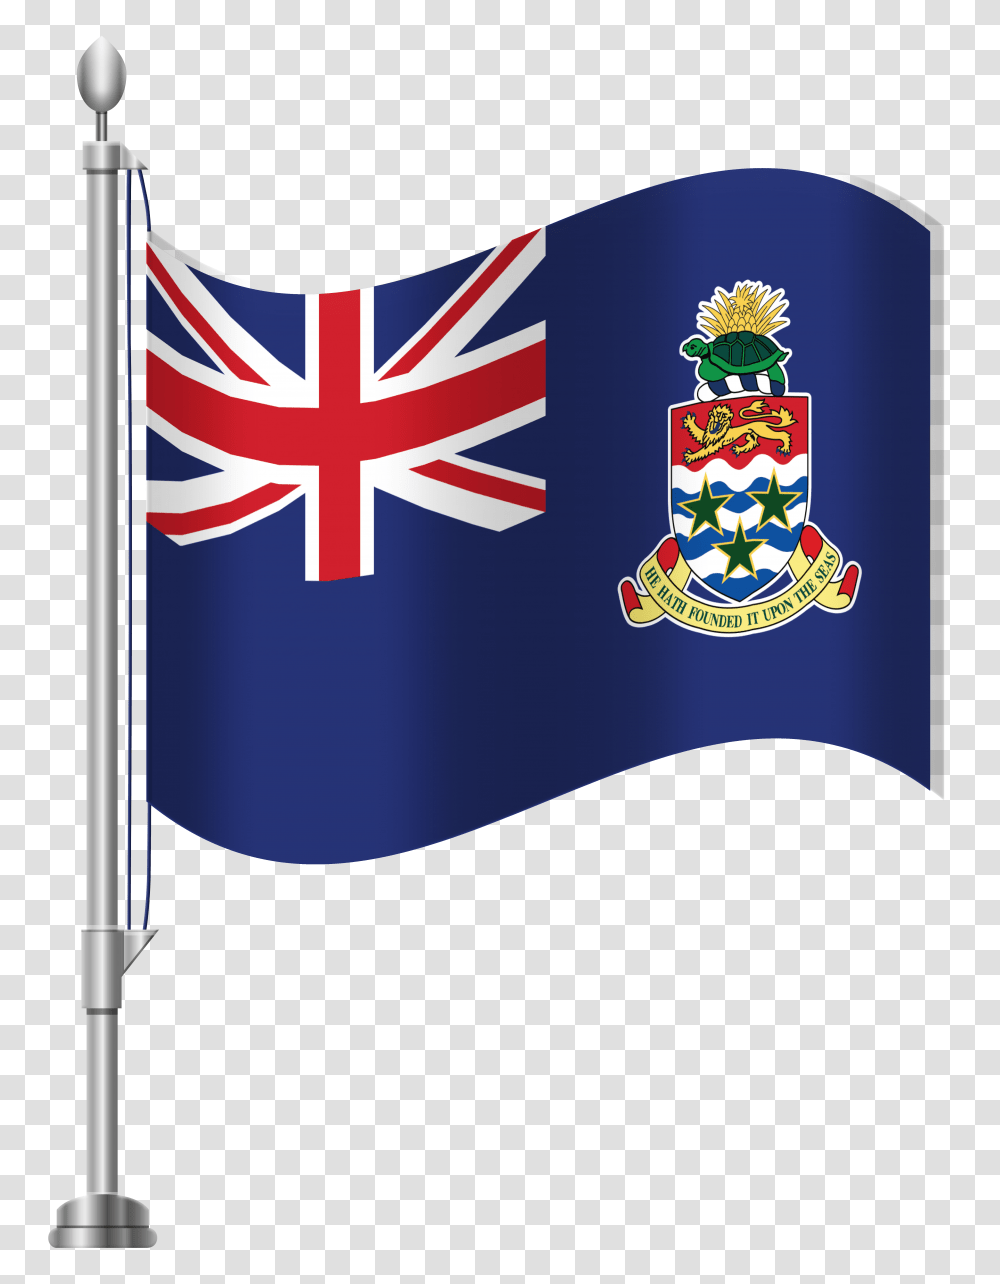 Cayman Islands Flag Clip Art, Emblem, American Flag Transparent Png